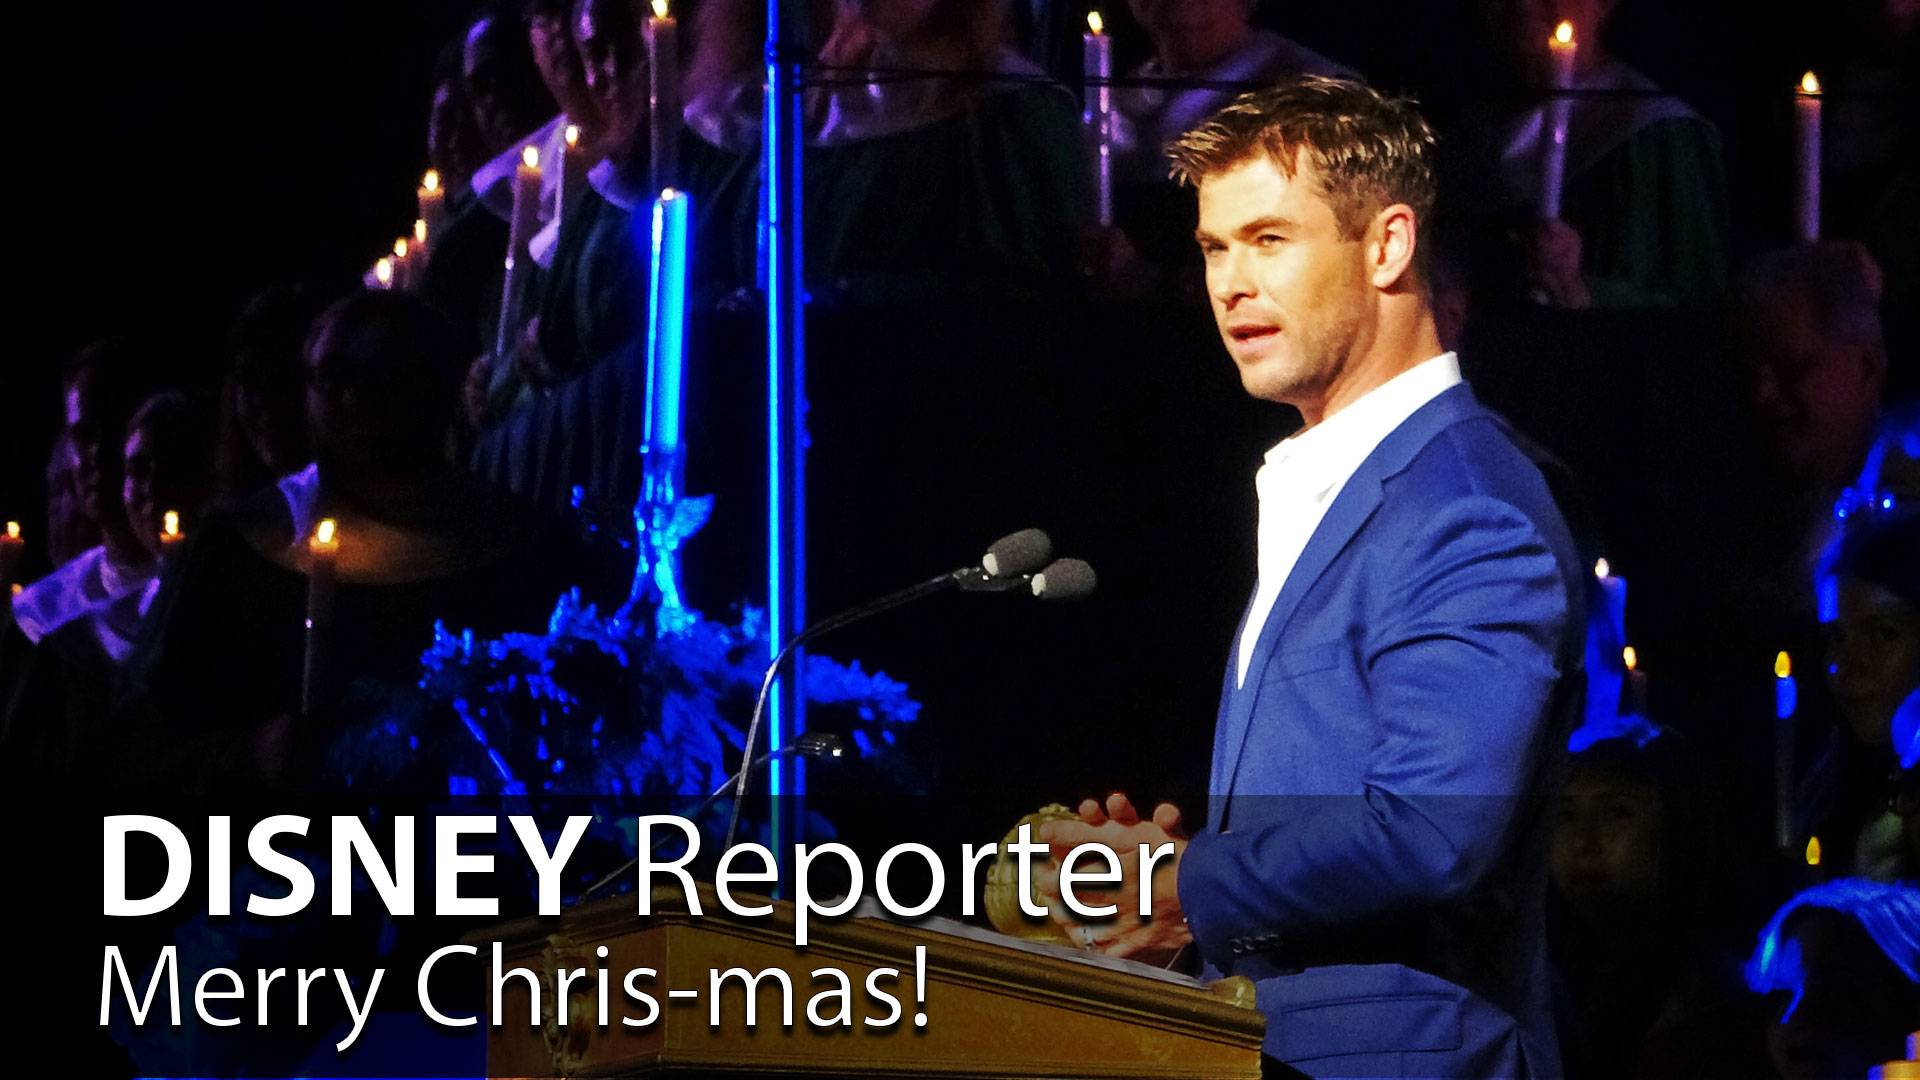 Merry Chris-mas! - DISNEY Reporter